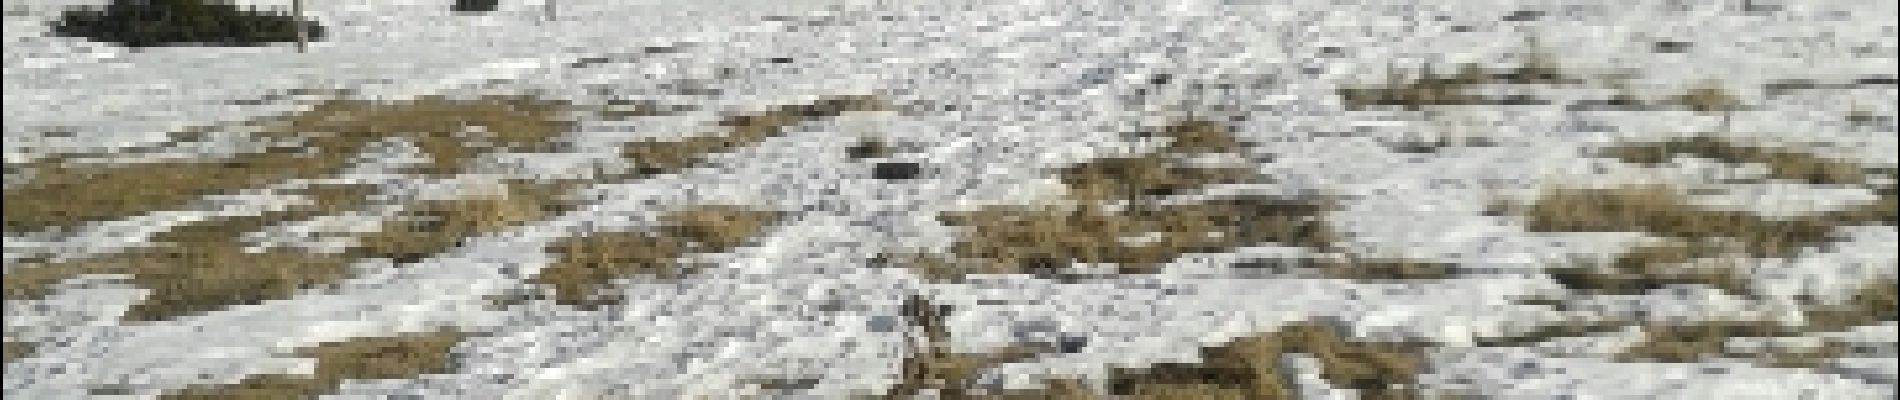 Randonnée Raquettes à neige Caudiès-de-Conflent - caudies de conflent - Photo